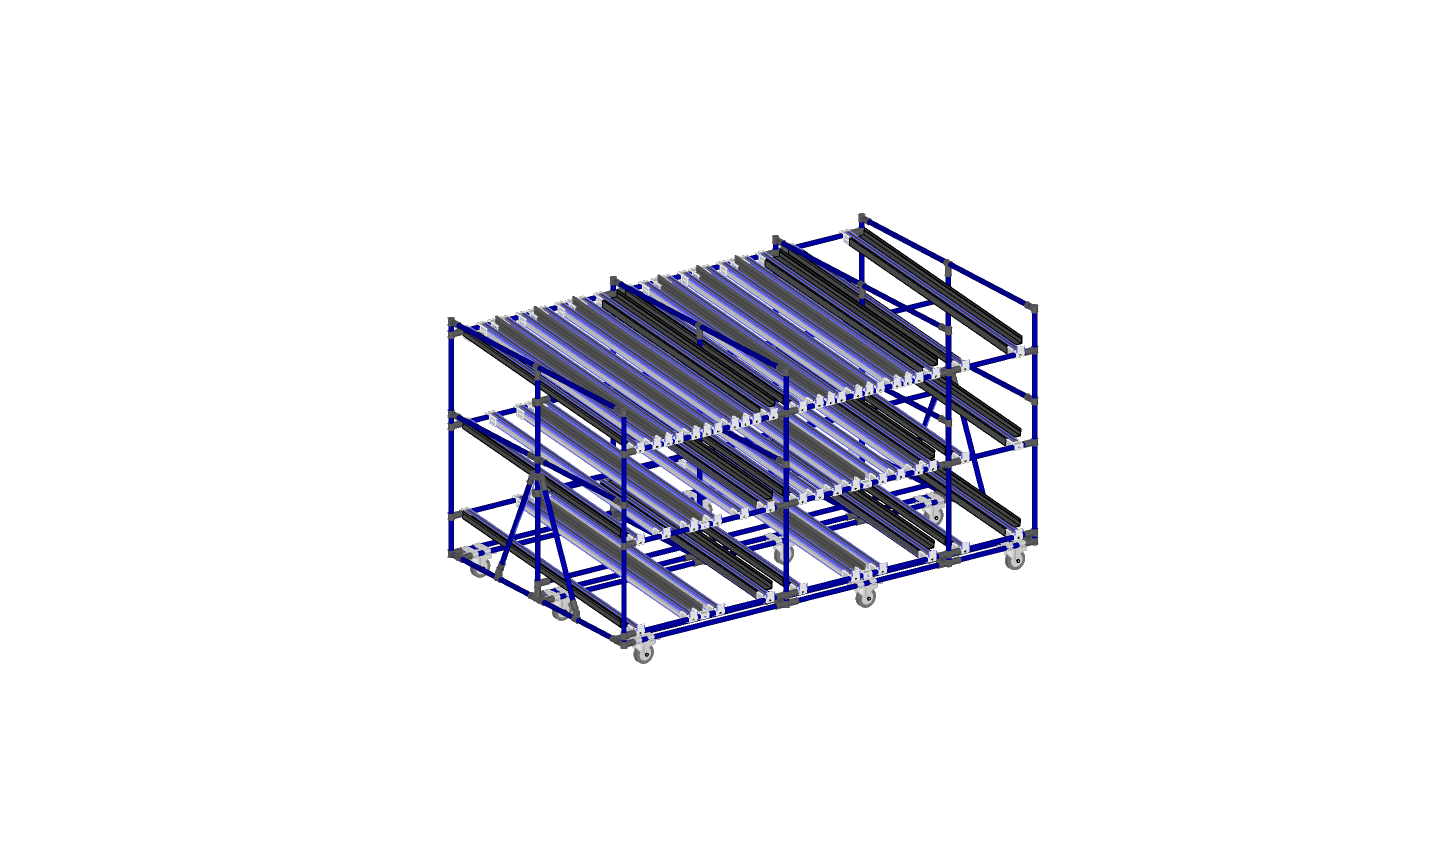 Assembly rack